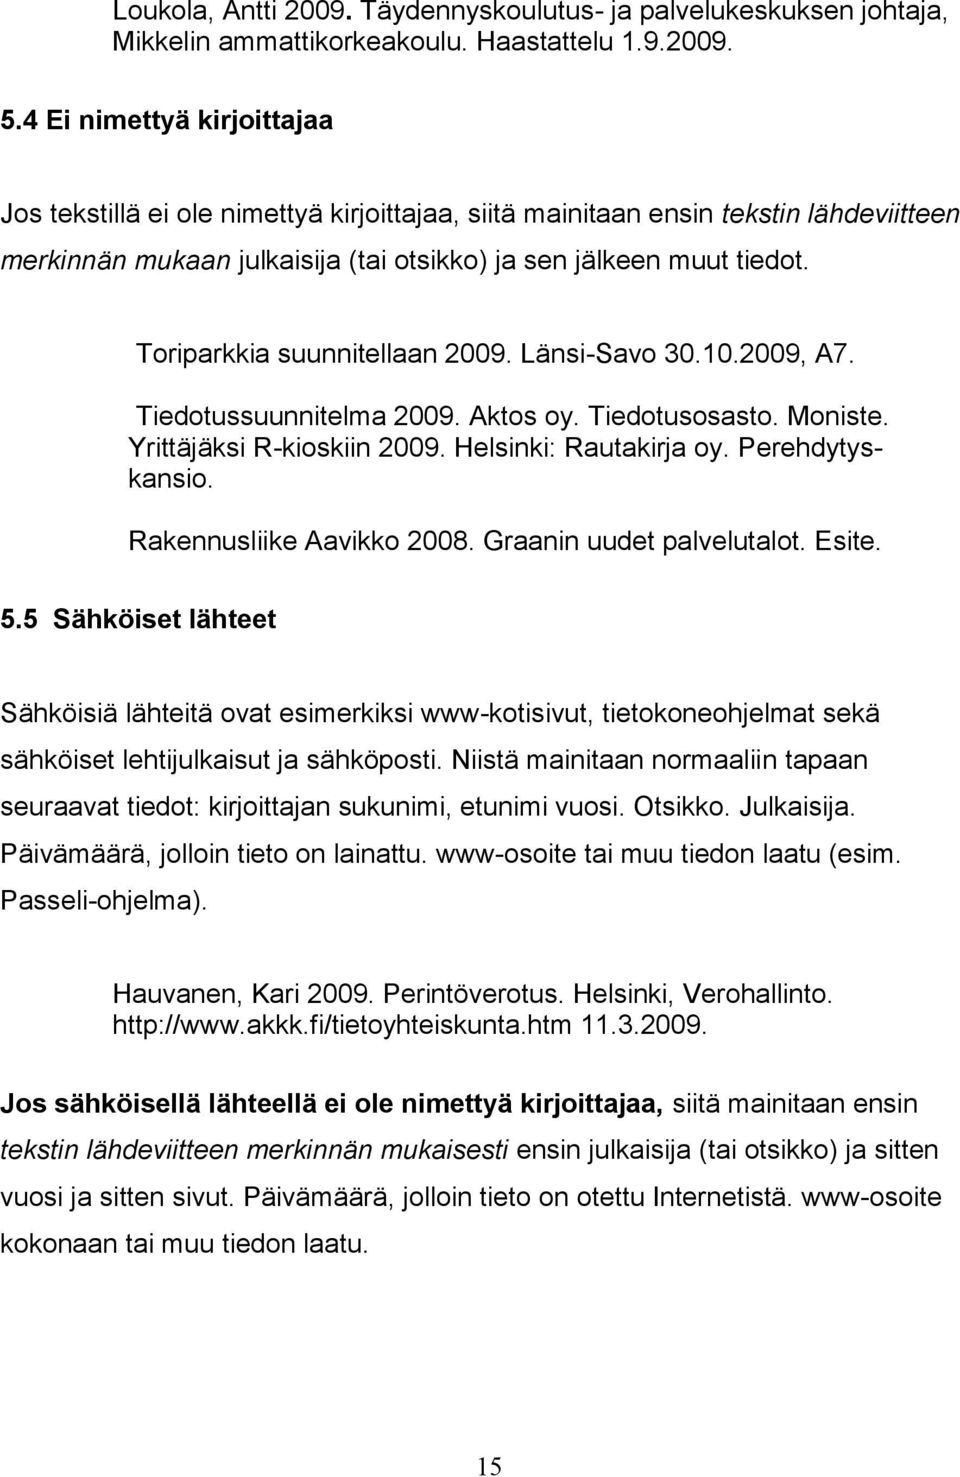 Toriparkkia suunnitellaan 2009. Länsi-Savo 30.10.2009, A7. Tiedotussuunnitelma 2009. Aktos oy. Tiedotusosasto. Moniste. Yrittäjäksi R-kioskiin 2009. Helsinki: Rautakirja oy. Perehdytyskansio.